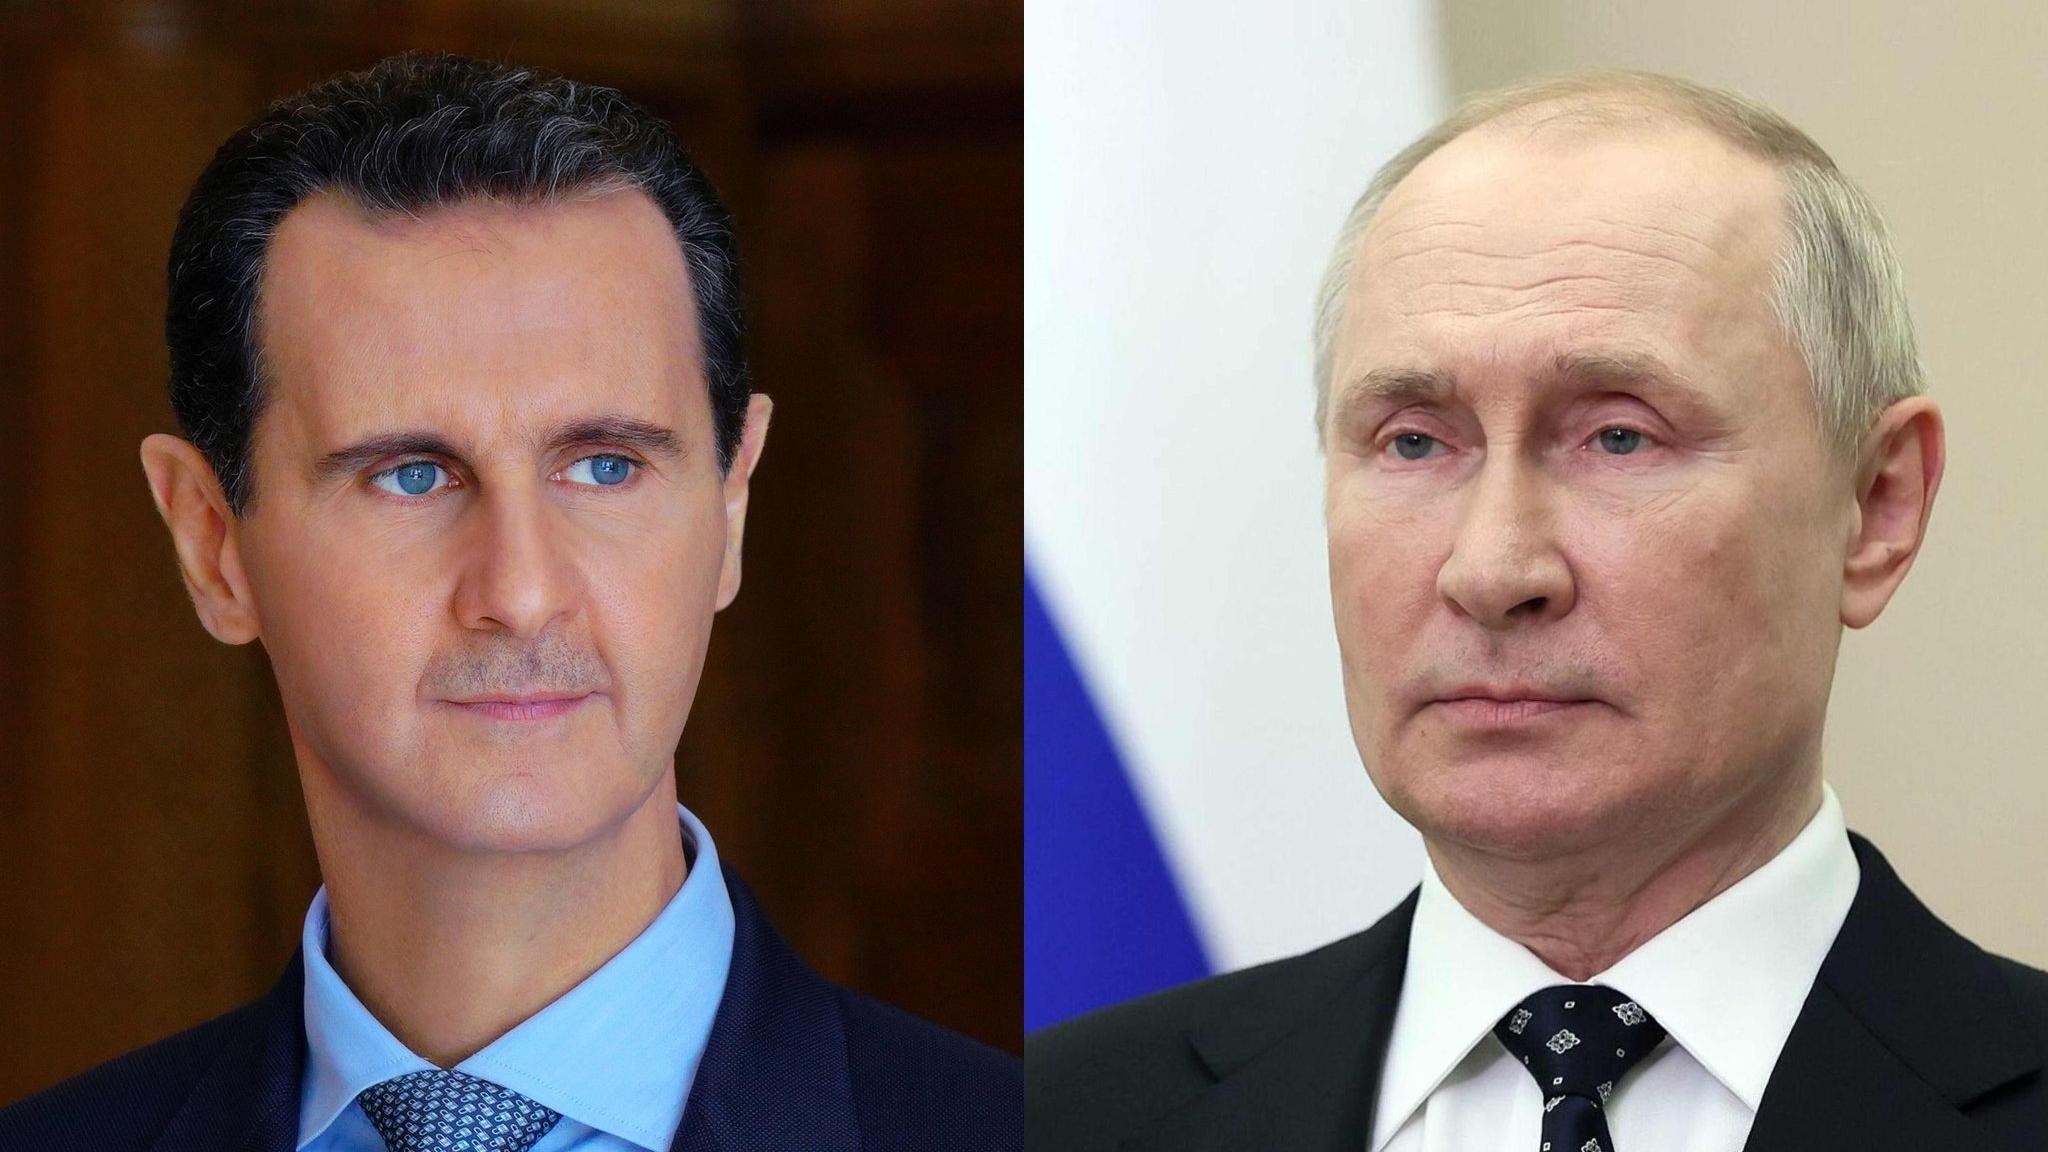 الرئيس الأسد يعزّي بوتين بضحايا الهجوم على مجمع كروكوس التجاري